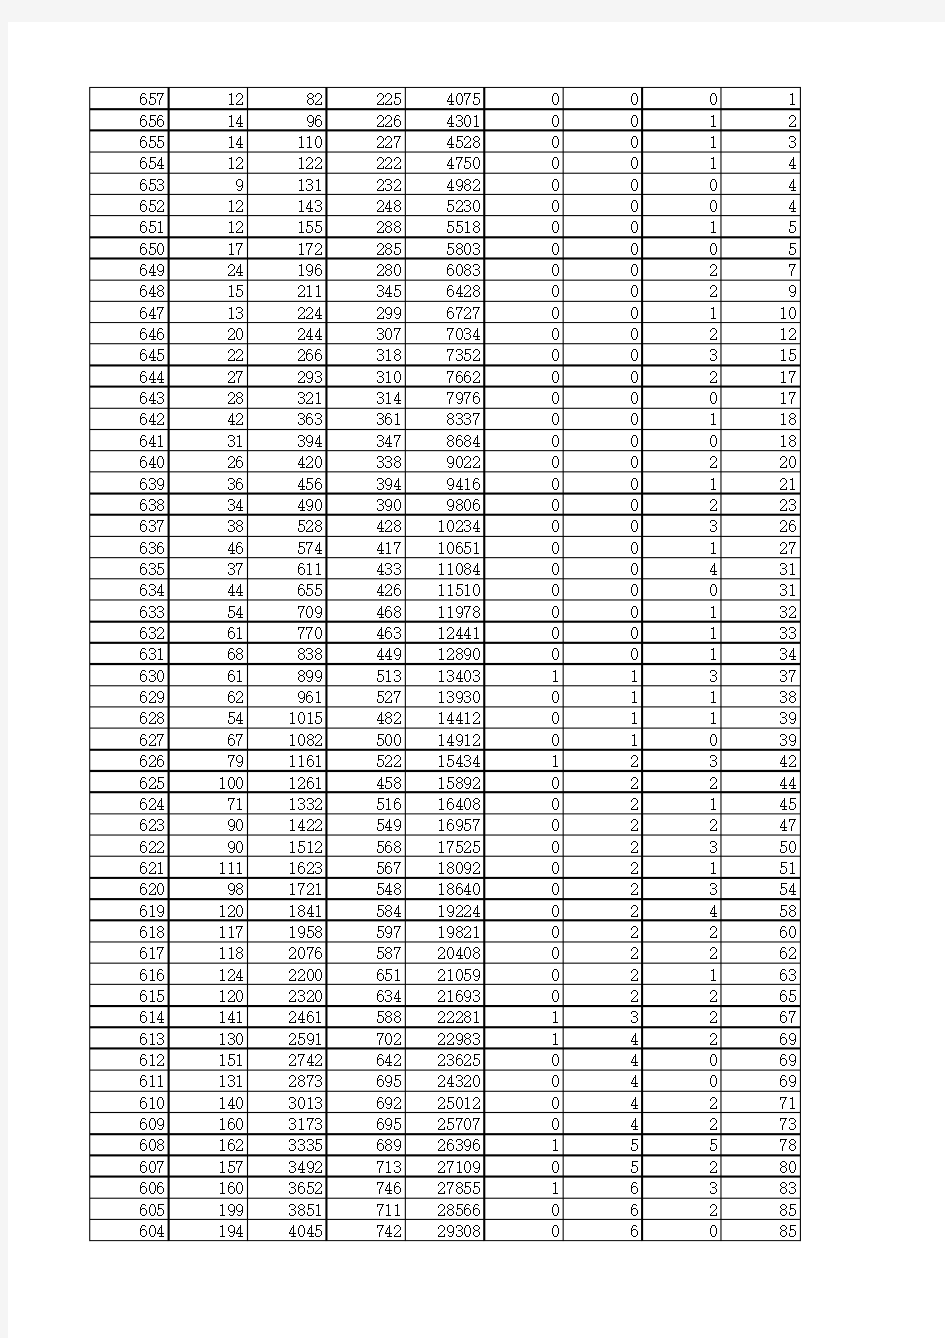 2015山东高考位次表(优质Excel)